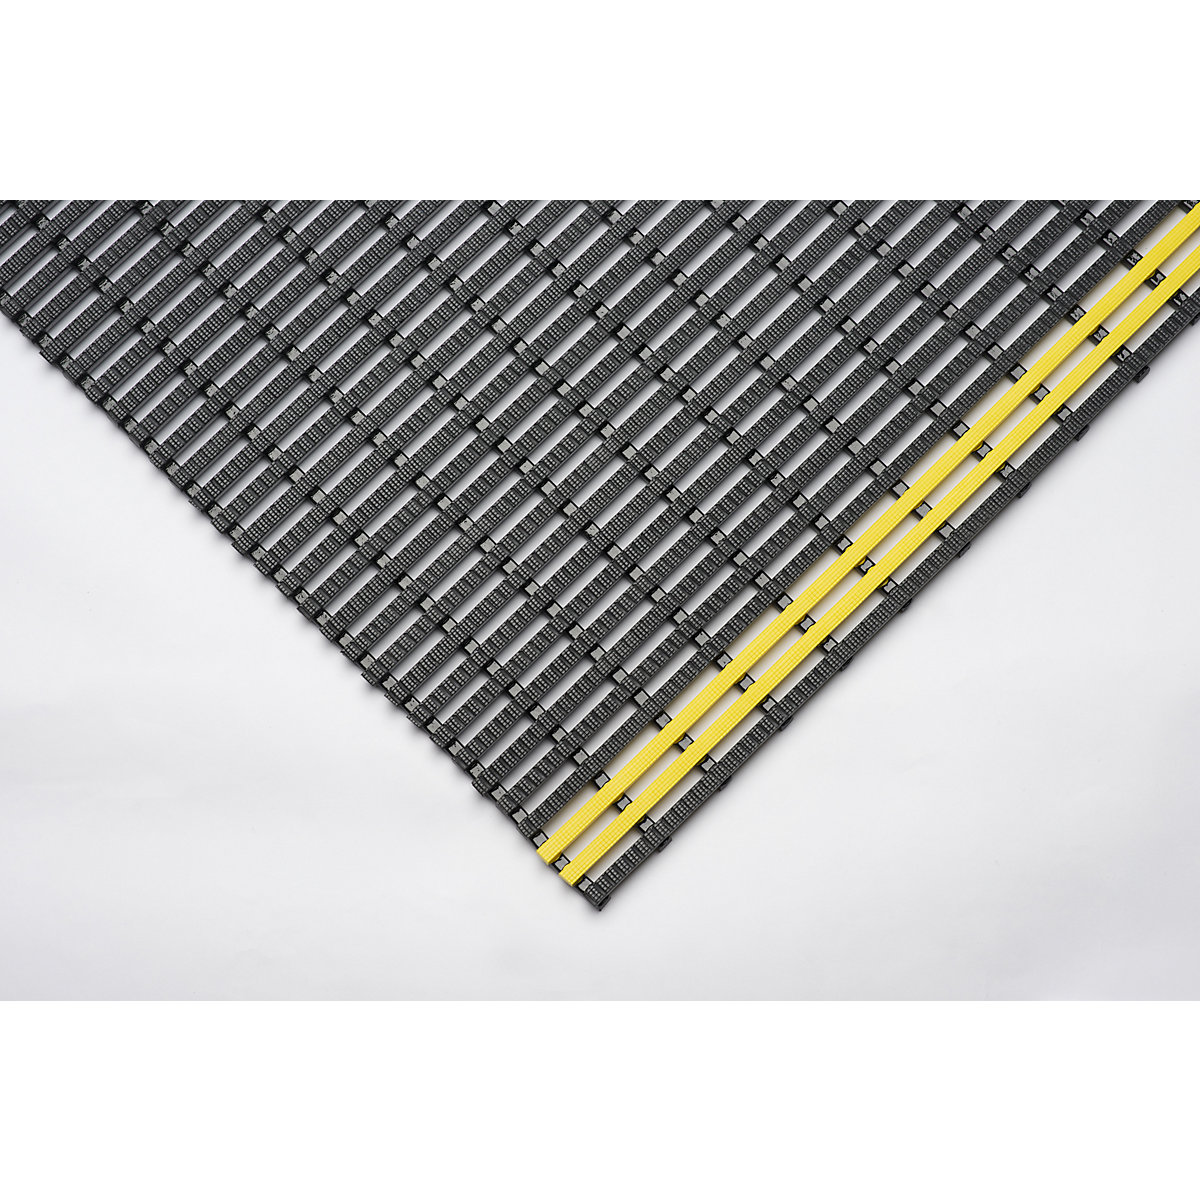 Esteira industrial, antiderrapante, por metro corrente, preto/amarelo, largura 1000 mm